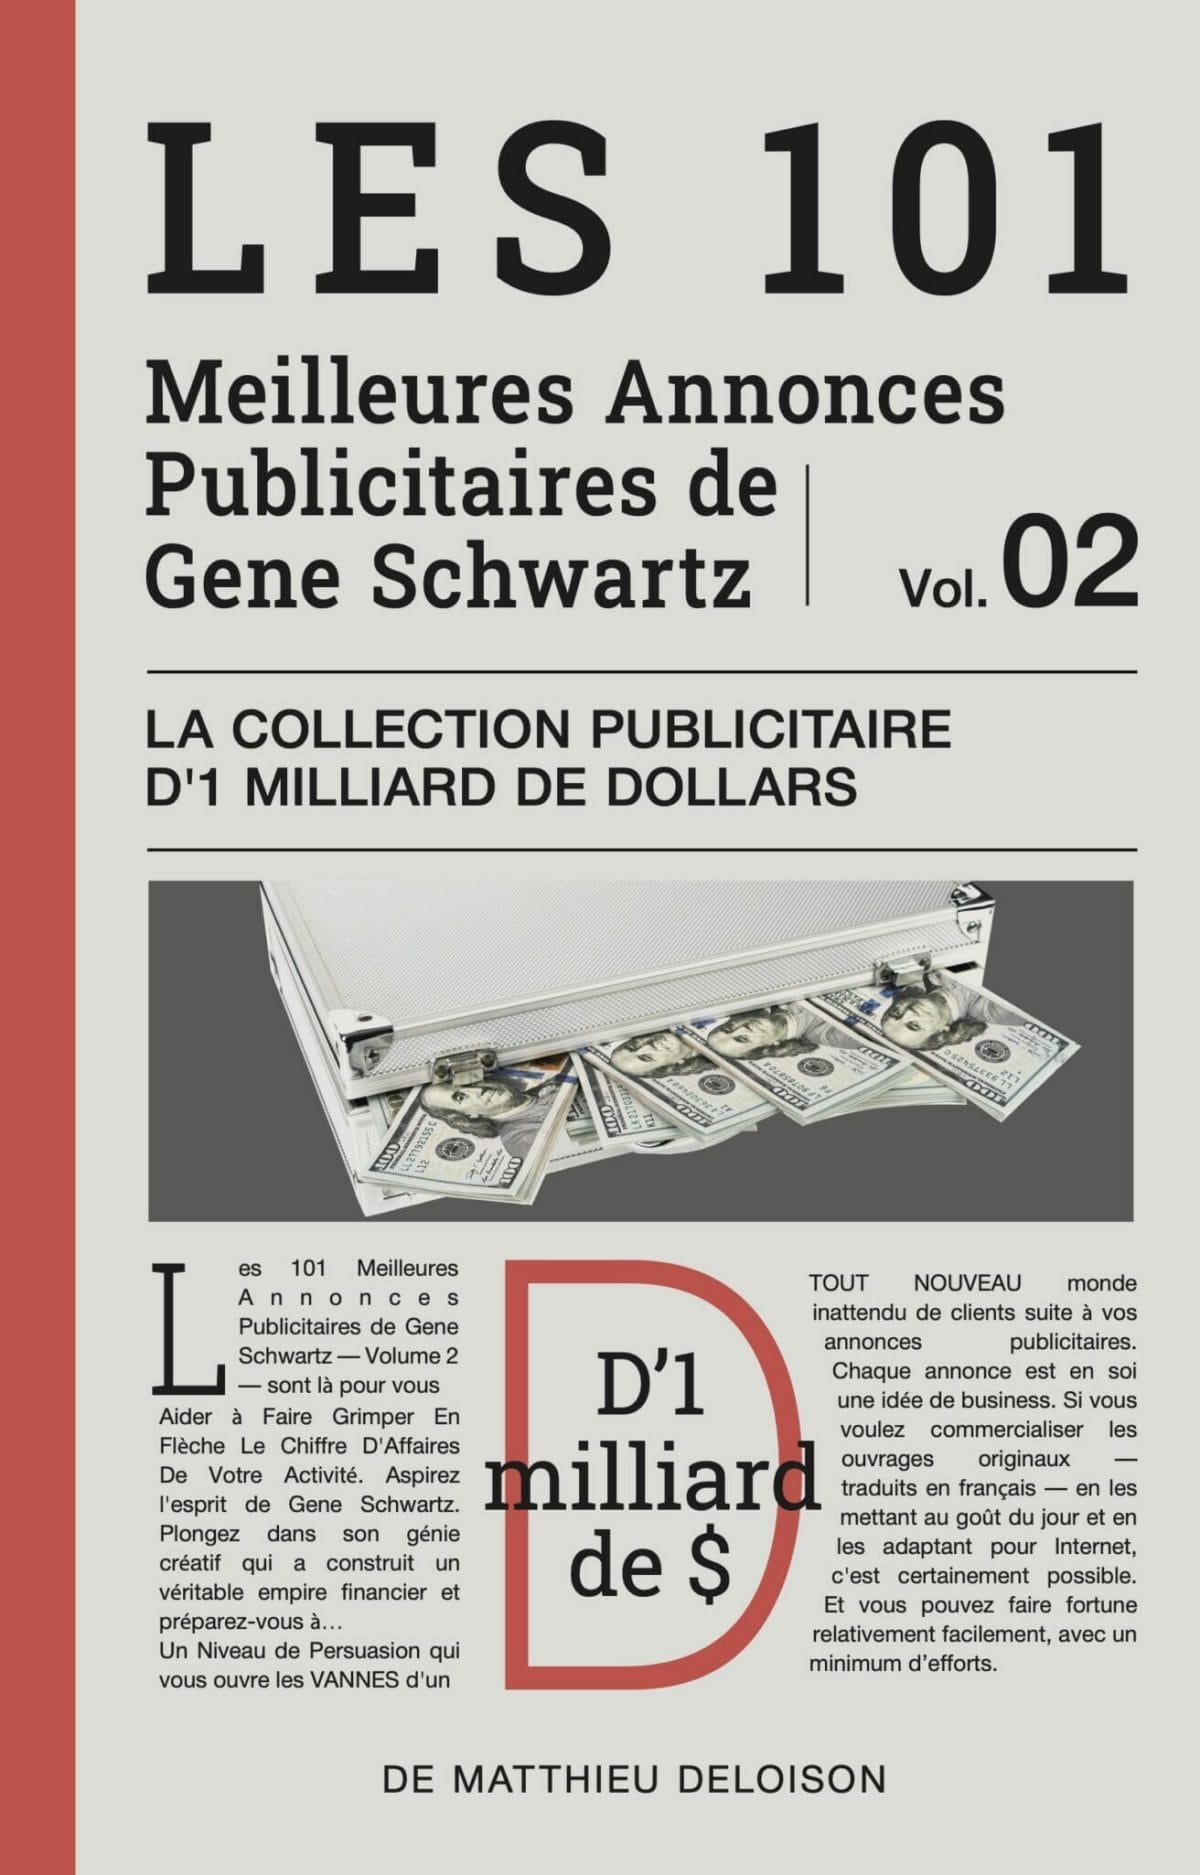 Les 101 Meilleures annonces publicitaires de gene schwartz — volume 2 — La Collection Publicitaire d'1 Milliard de Dollars